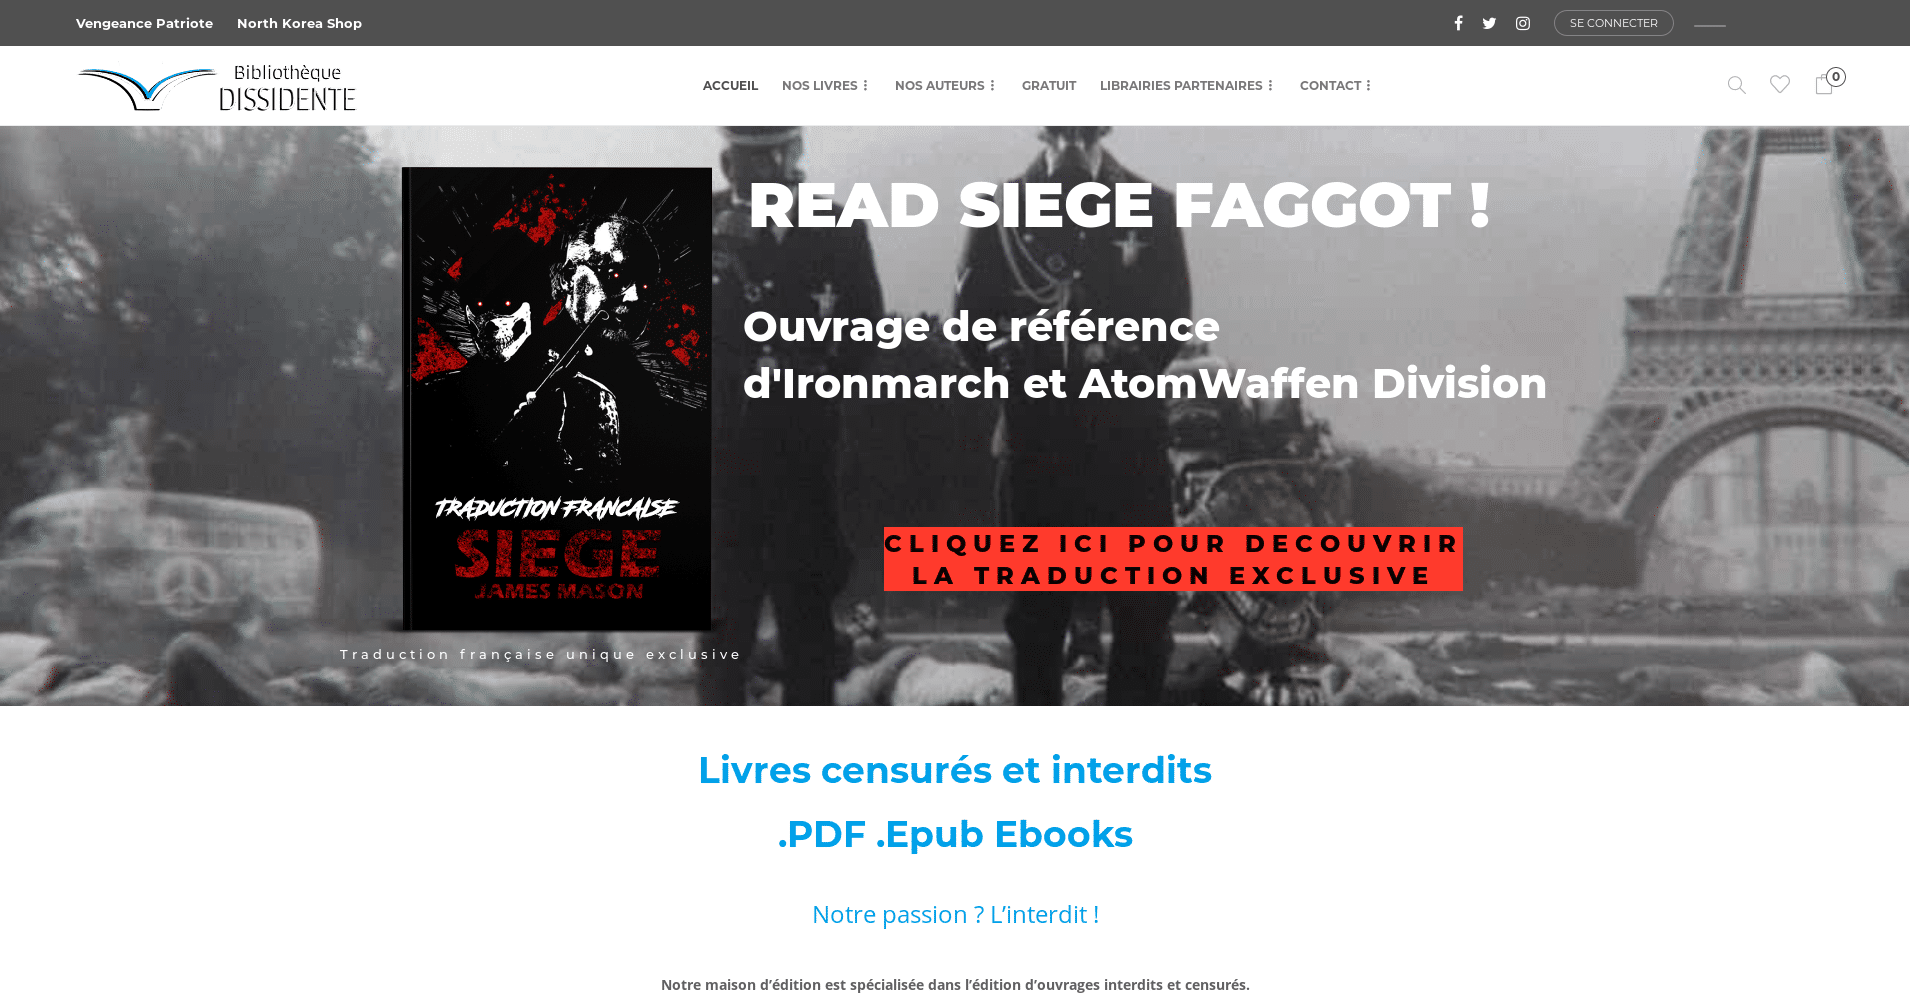 Le site Bibliothèque Dissidente